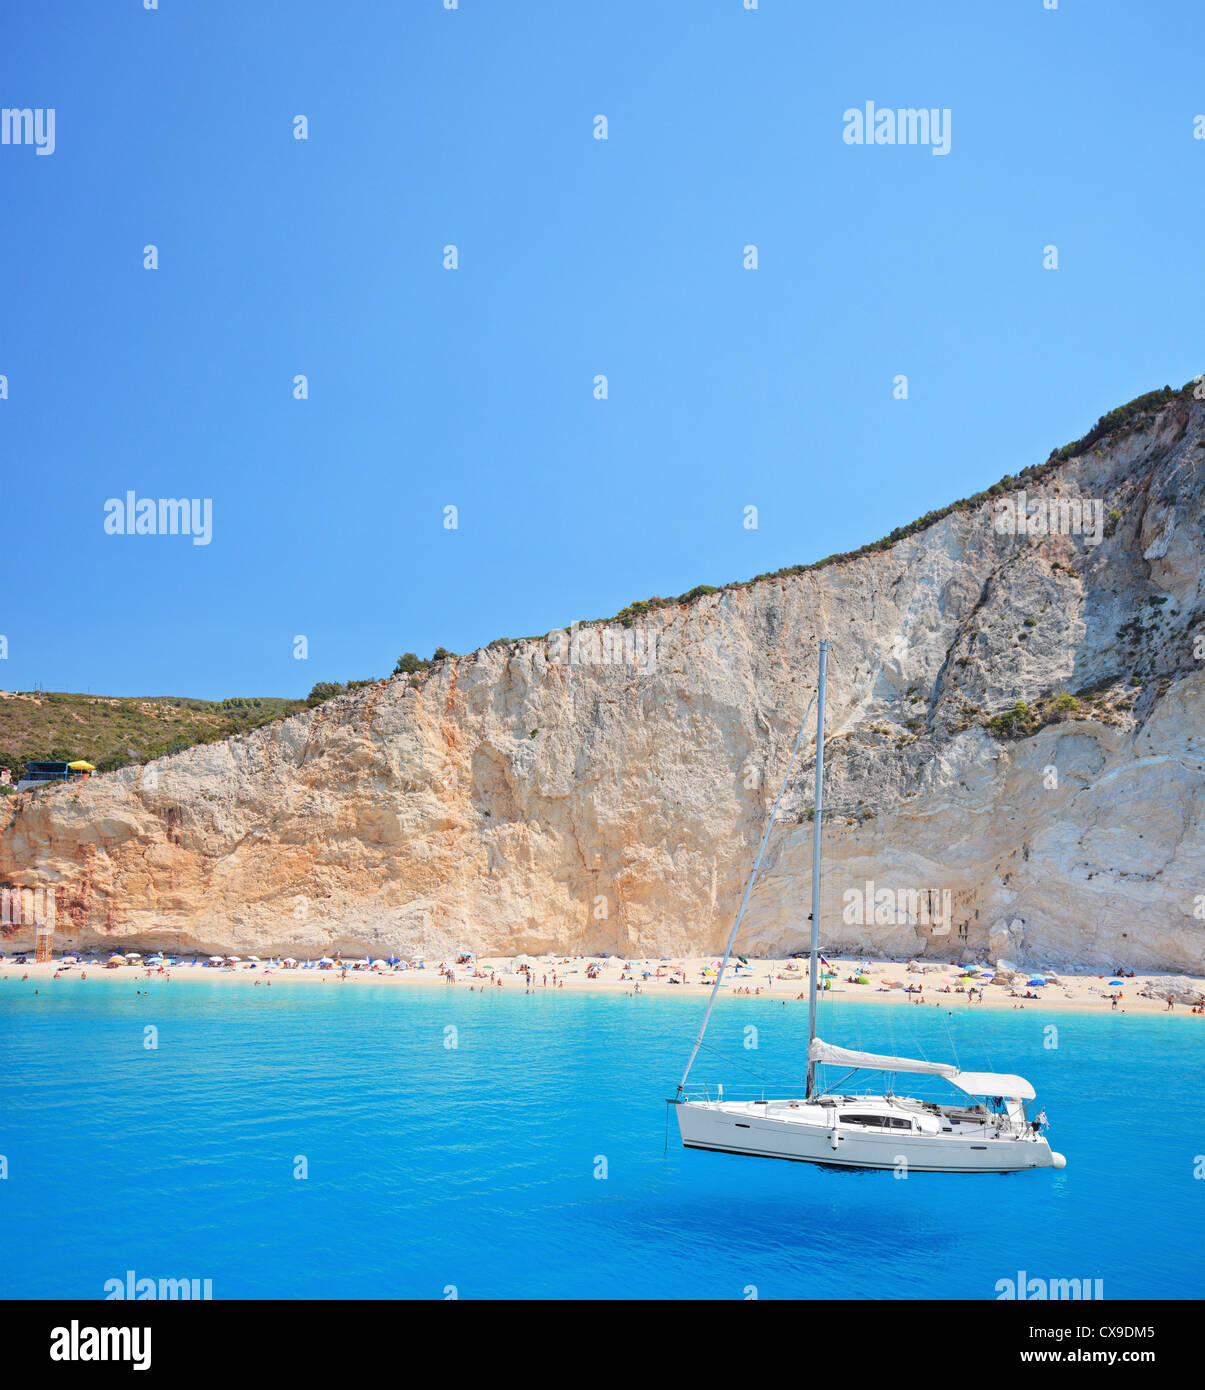 Yacht anchored at Porto Katsiki beach on the island of Lefkada, Greece Stock Photo